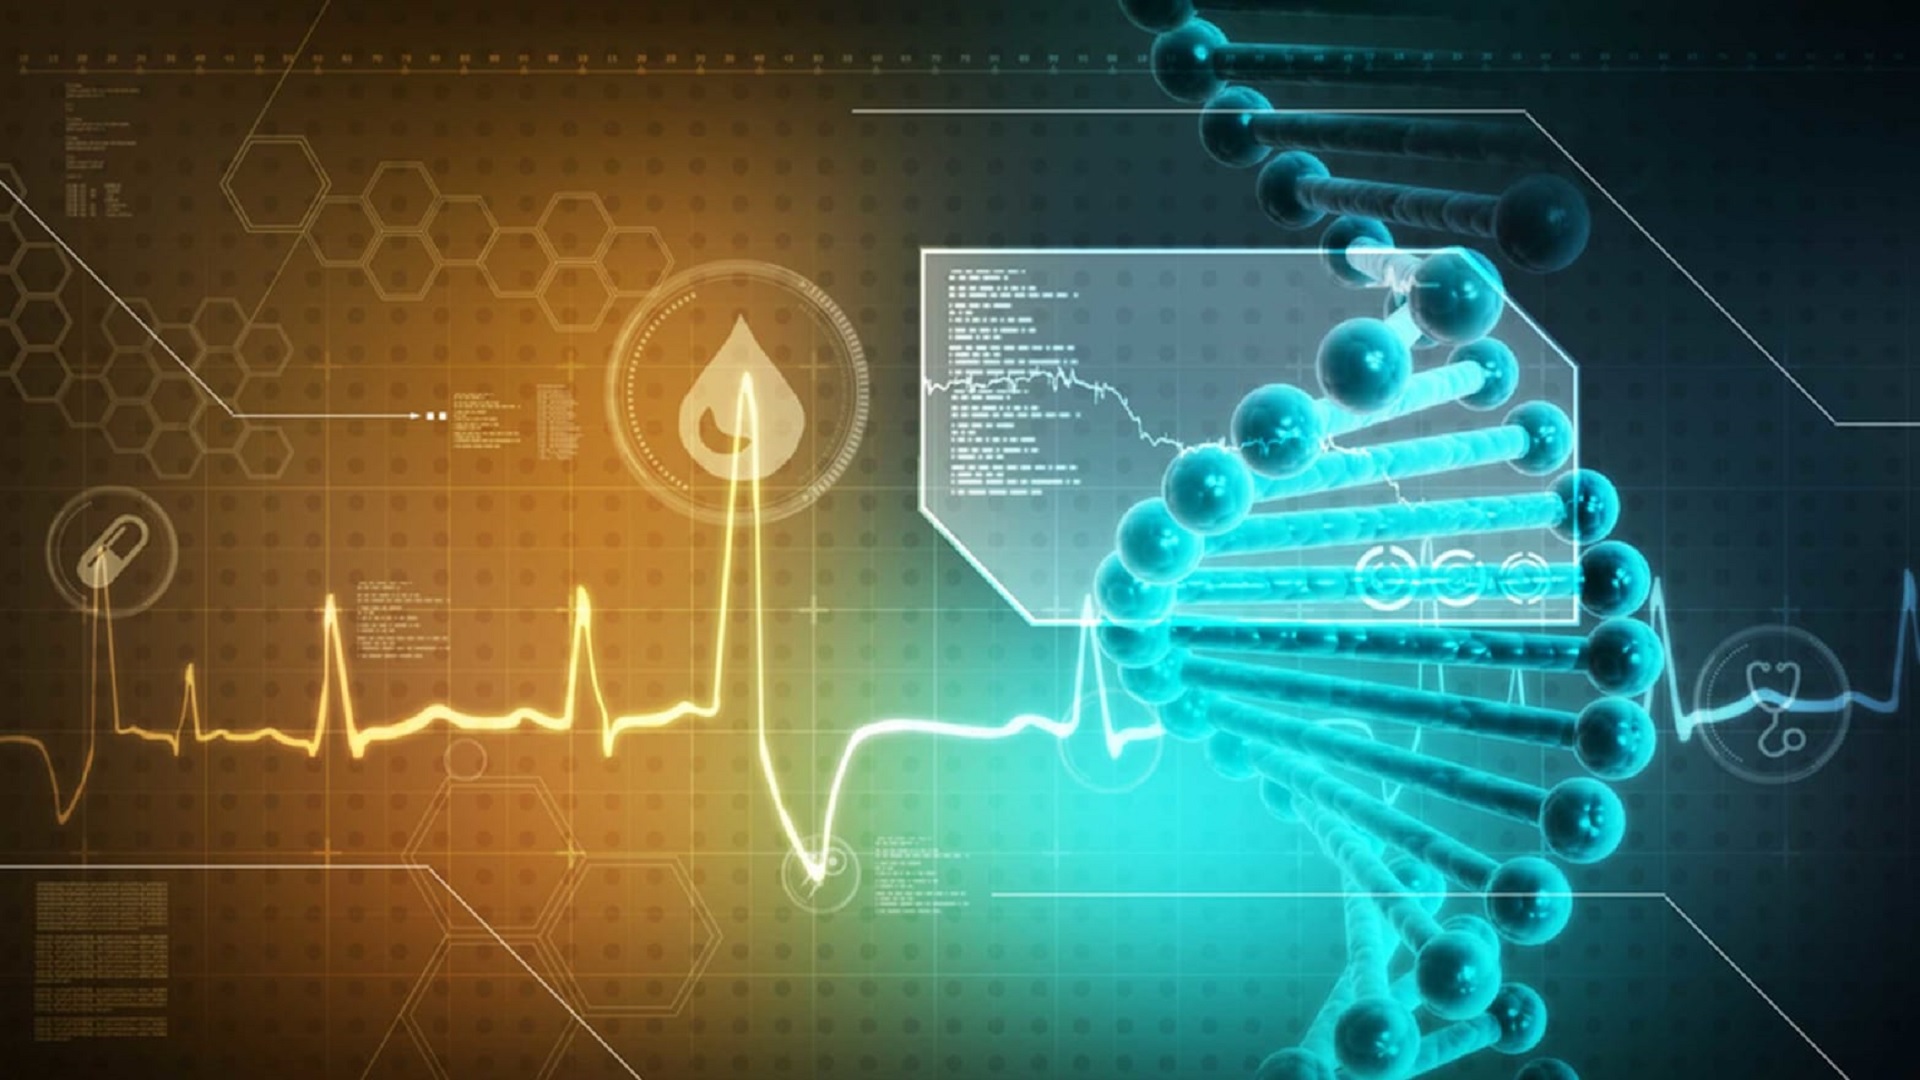 Νέα τεχνολογία για μείωση σφαλμάτων στις δοκιμές DNA